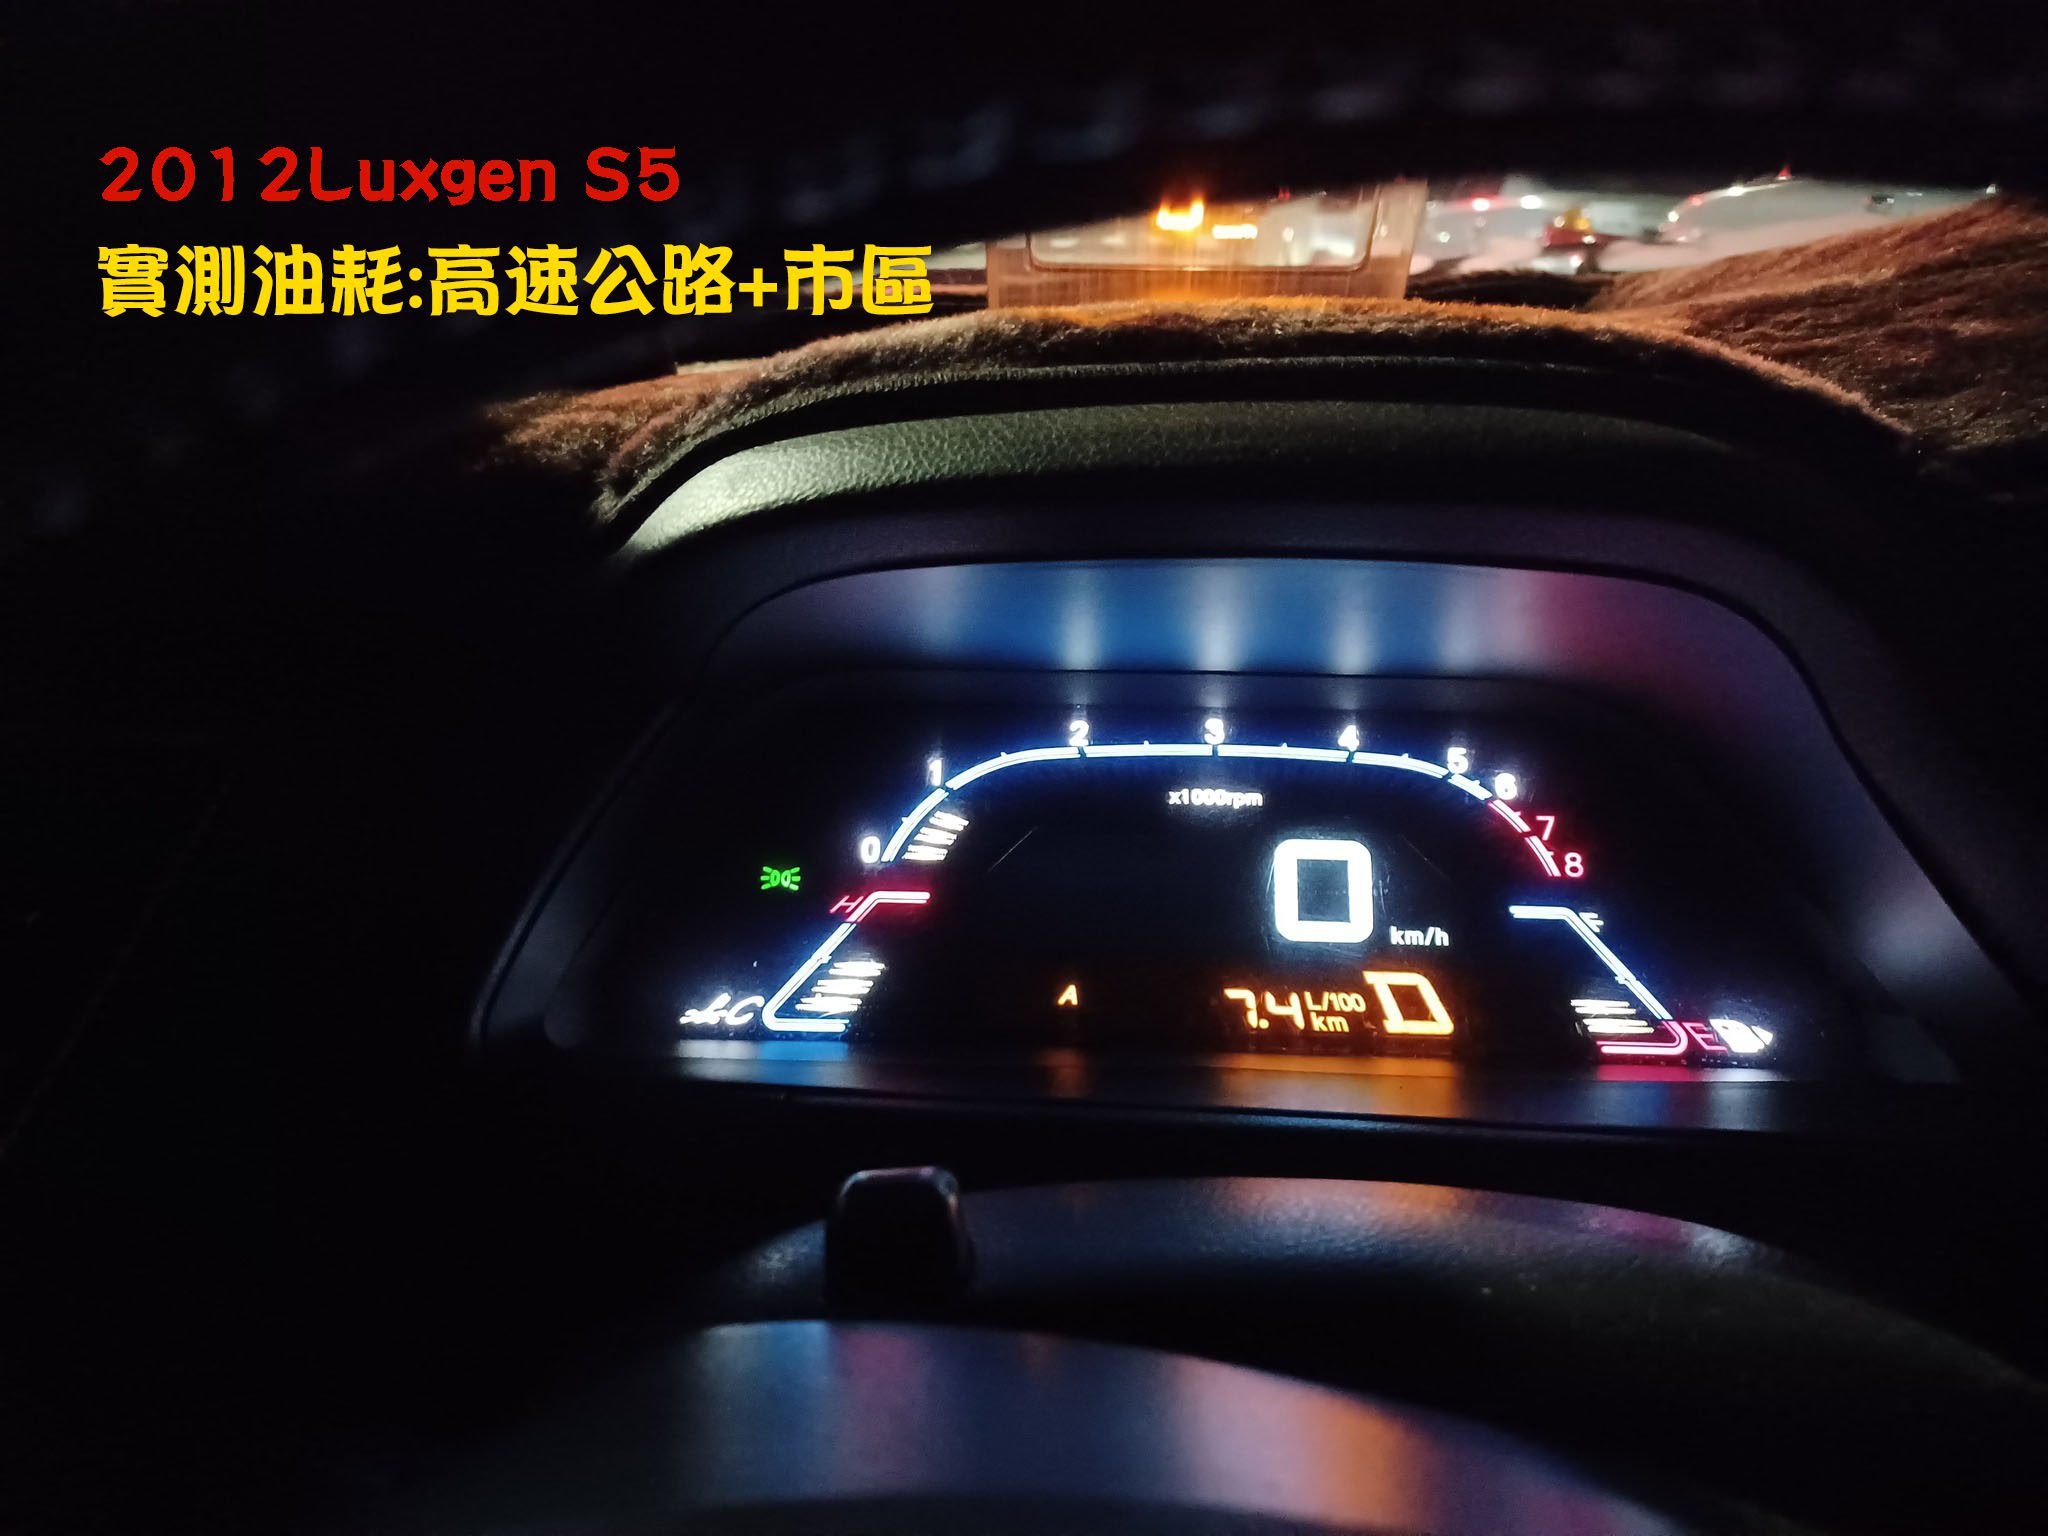 2012 Luxgen S5快速道路市區混和油耗